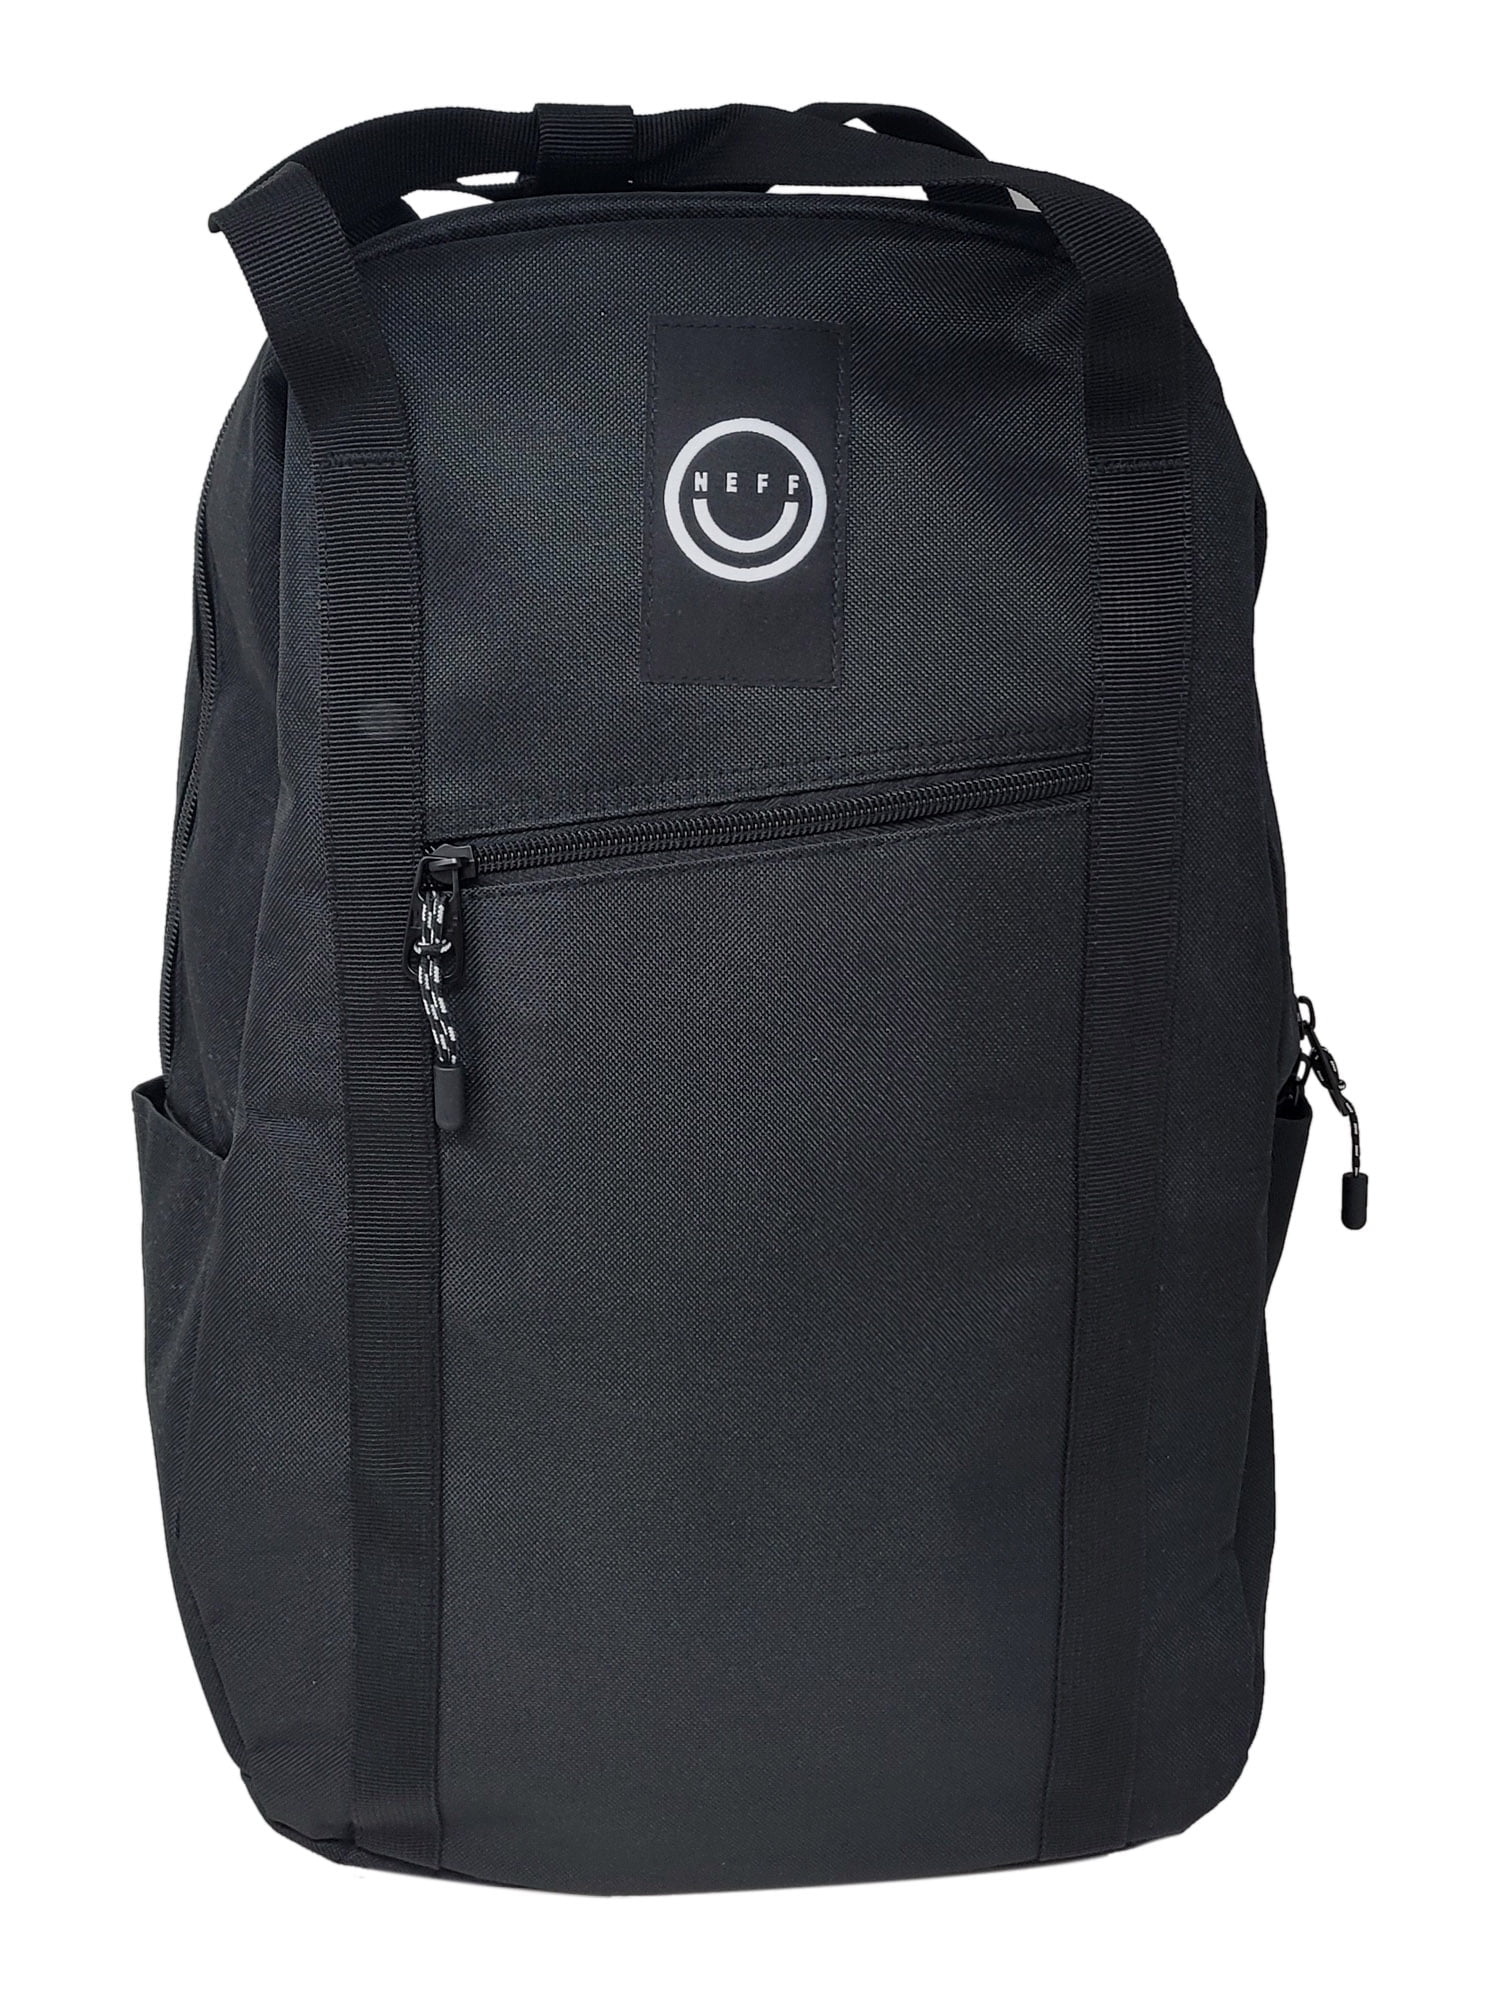 NEFF Buy Daily XL Backpack Online India | Ubuy